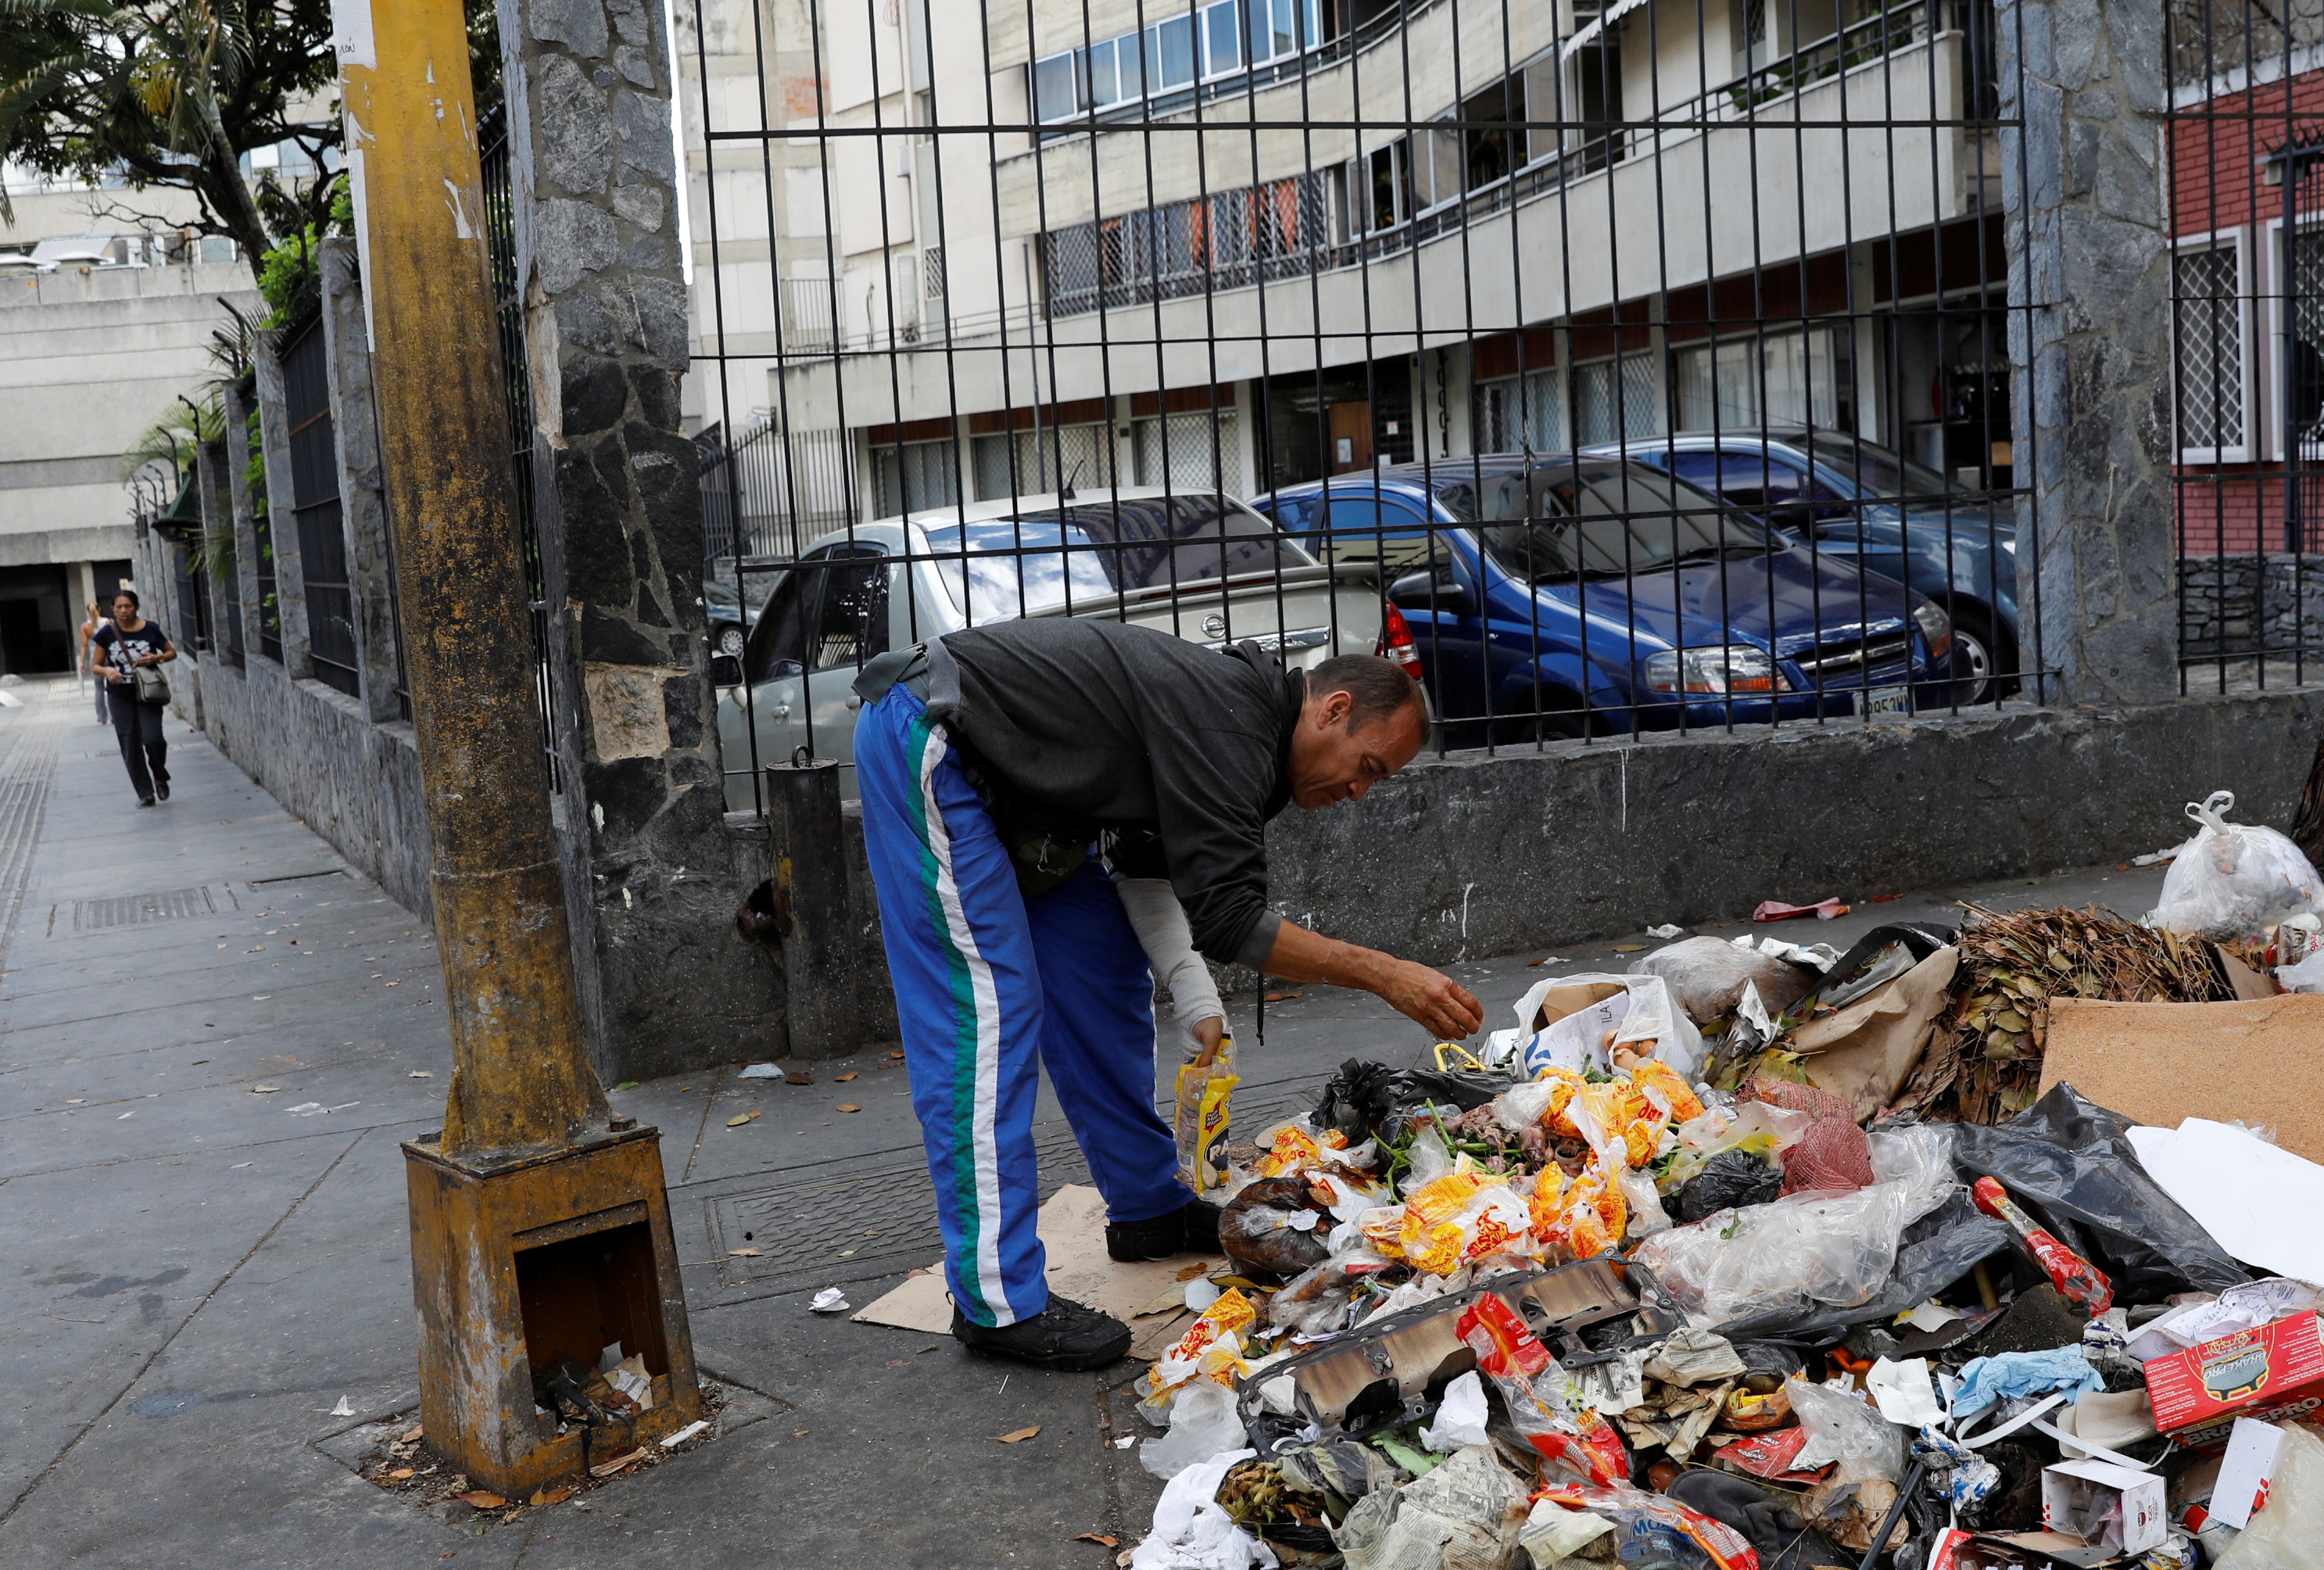 Este chavista sigue respirando en un país paralelo: El pueblo venezolano “está viviendo bien” (VIDEO)